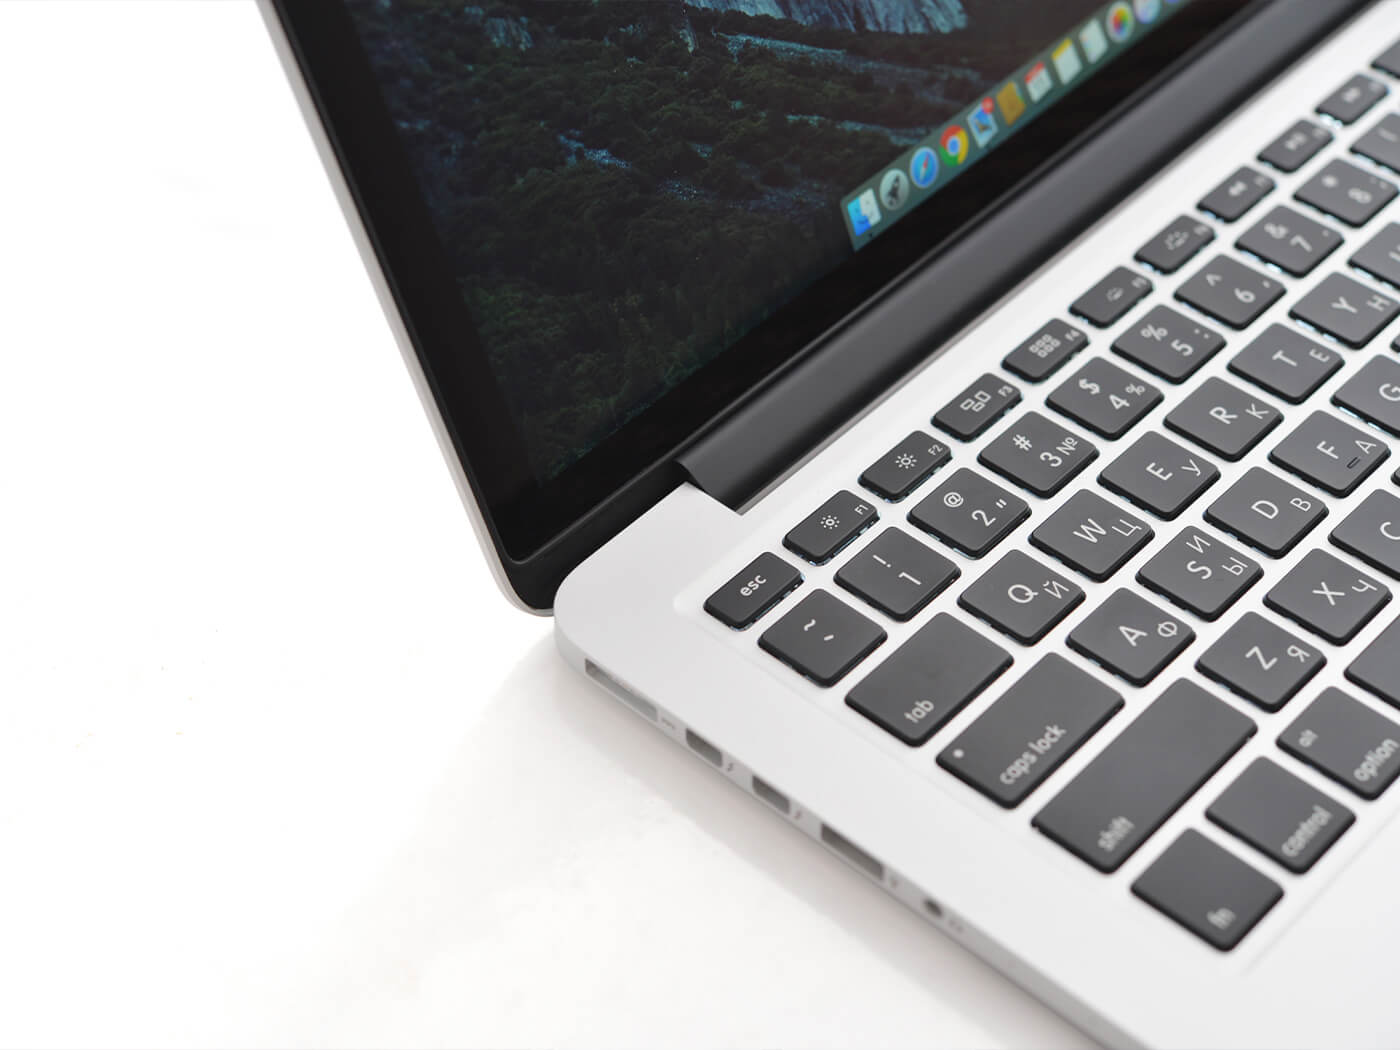 Future MacBook Pros may bring back MagSafe charging and ...